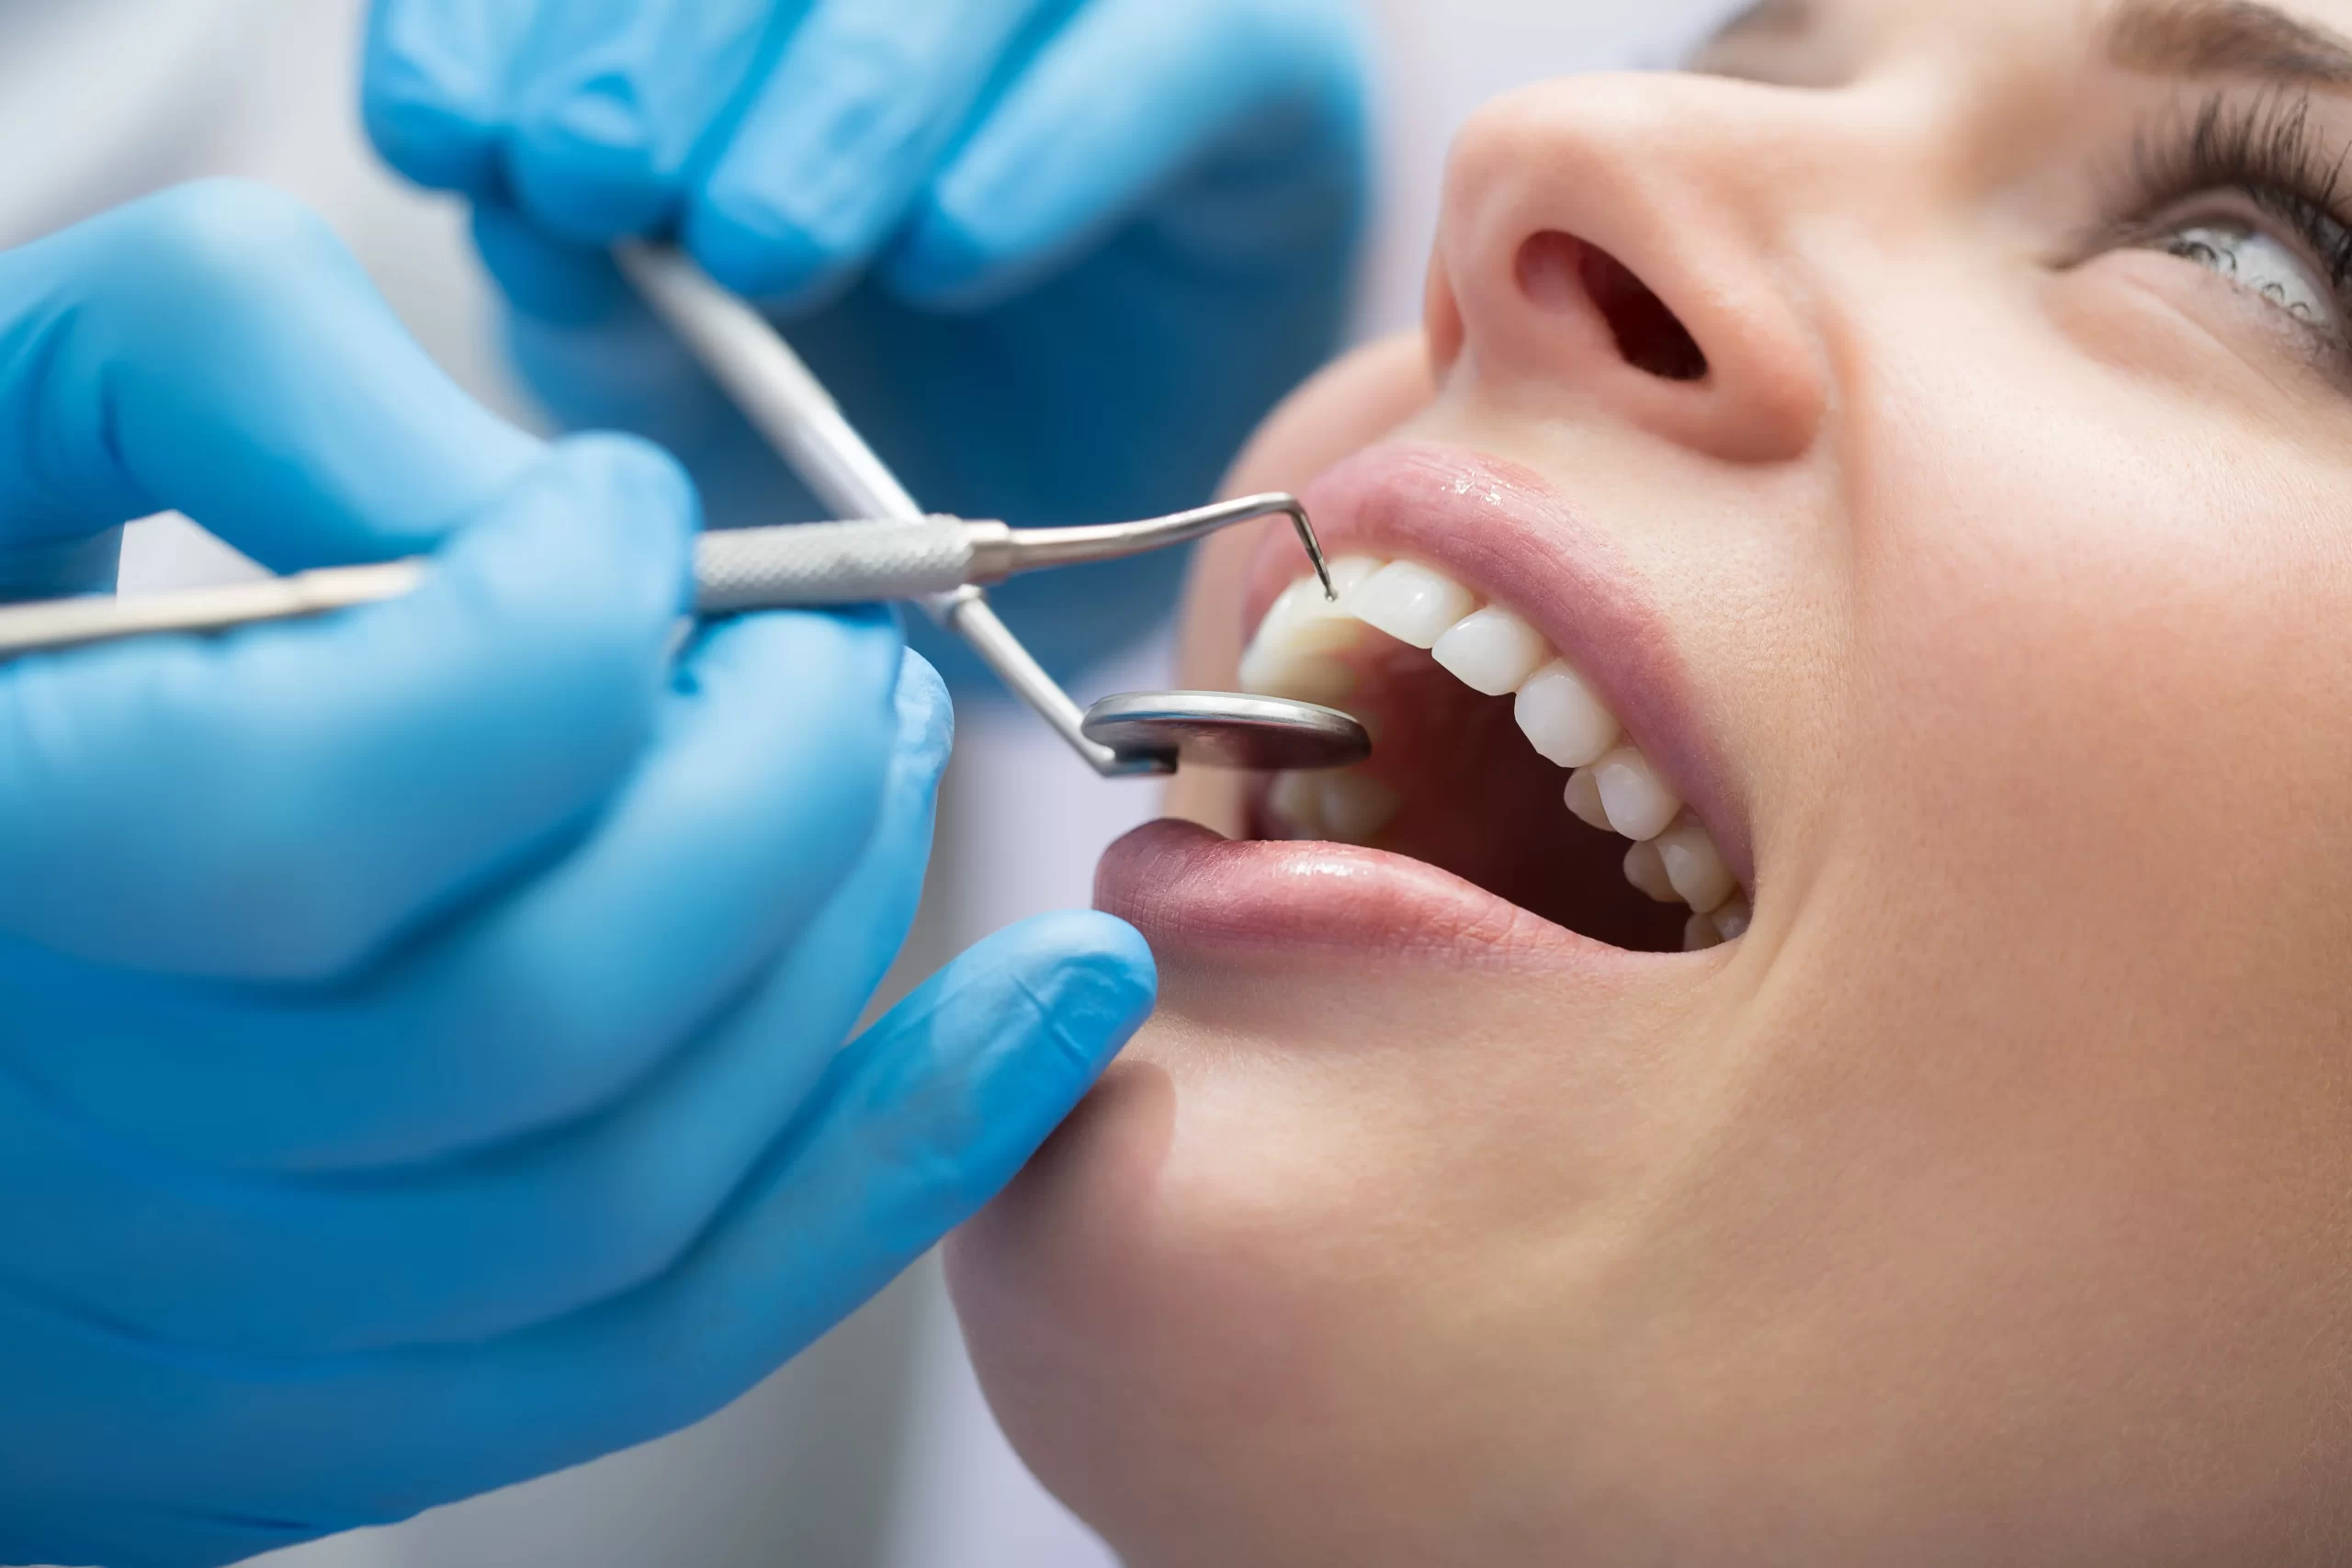 Sau khi lấy tủy răng có thể tham khảo phương pháp phục hình răng để đảm bảo tính thẩm mỹ và chức năng ăn nhai